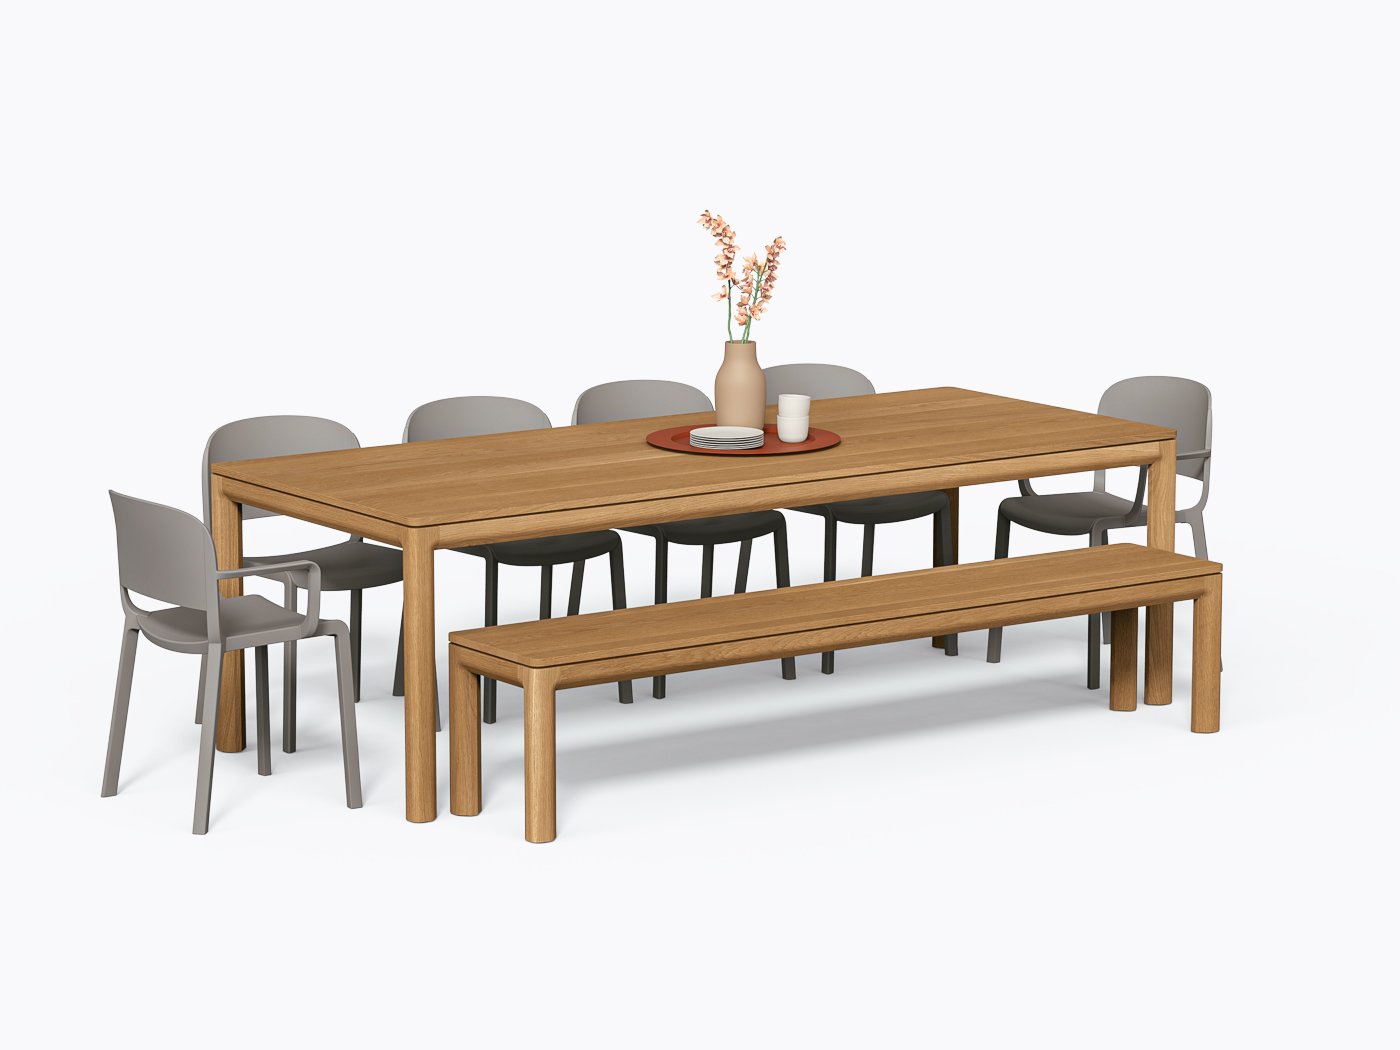 Klein Dining Table - 40" X 96" - White Oak